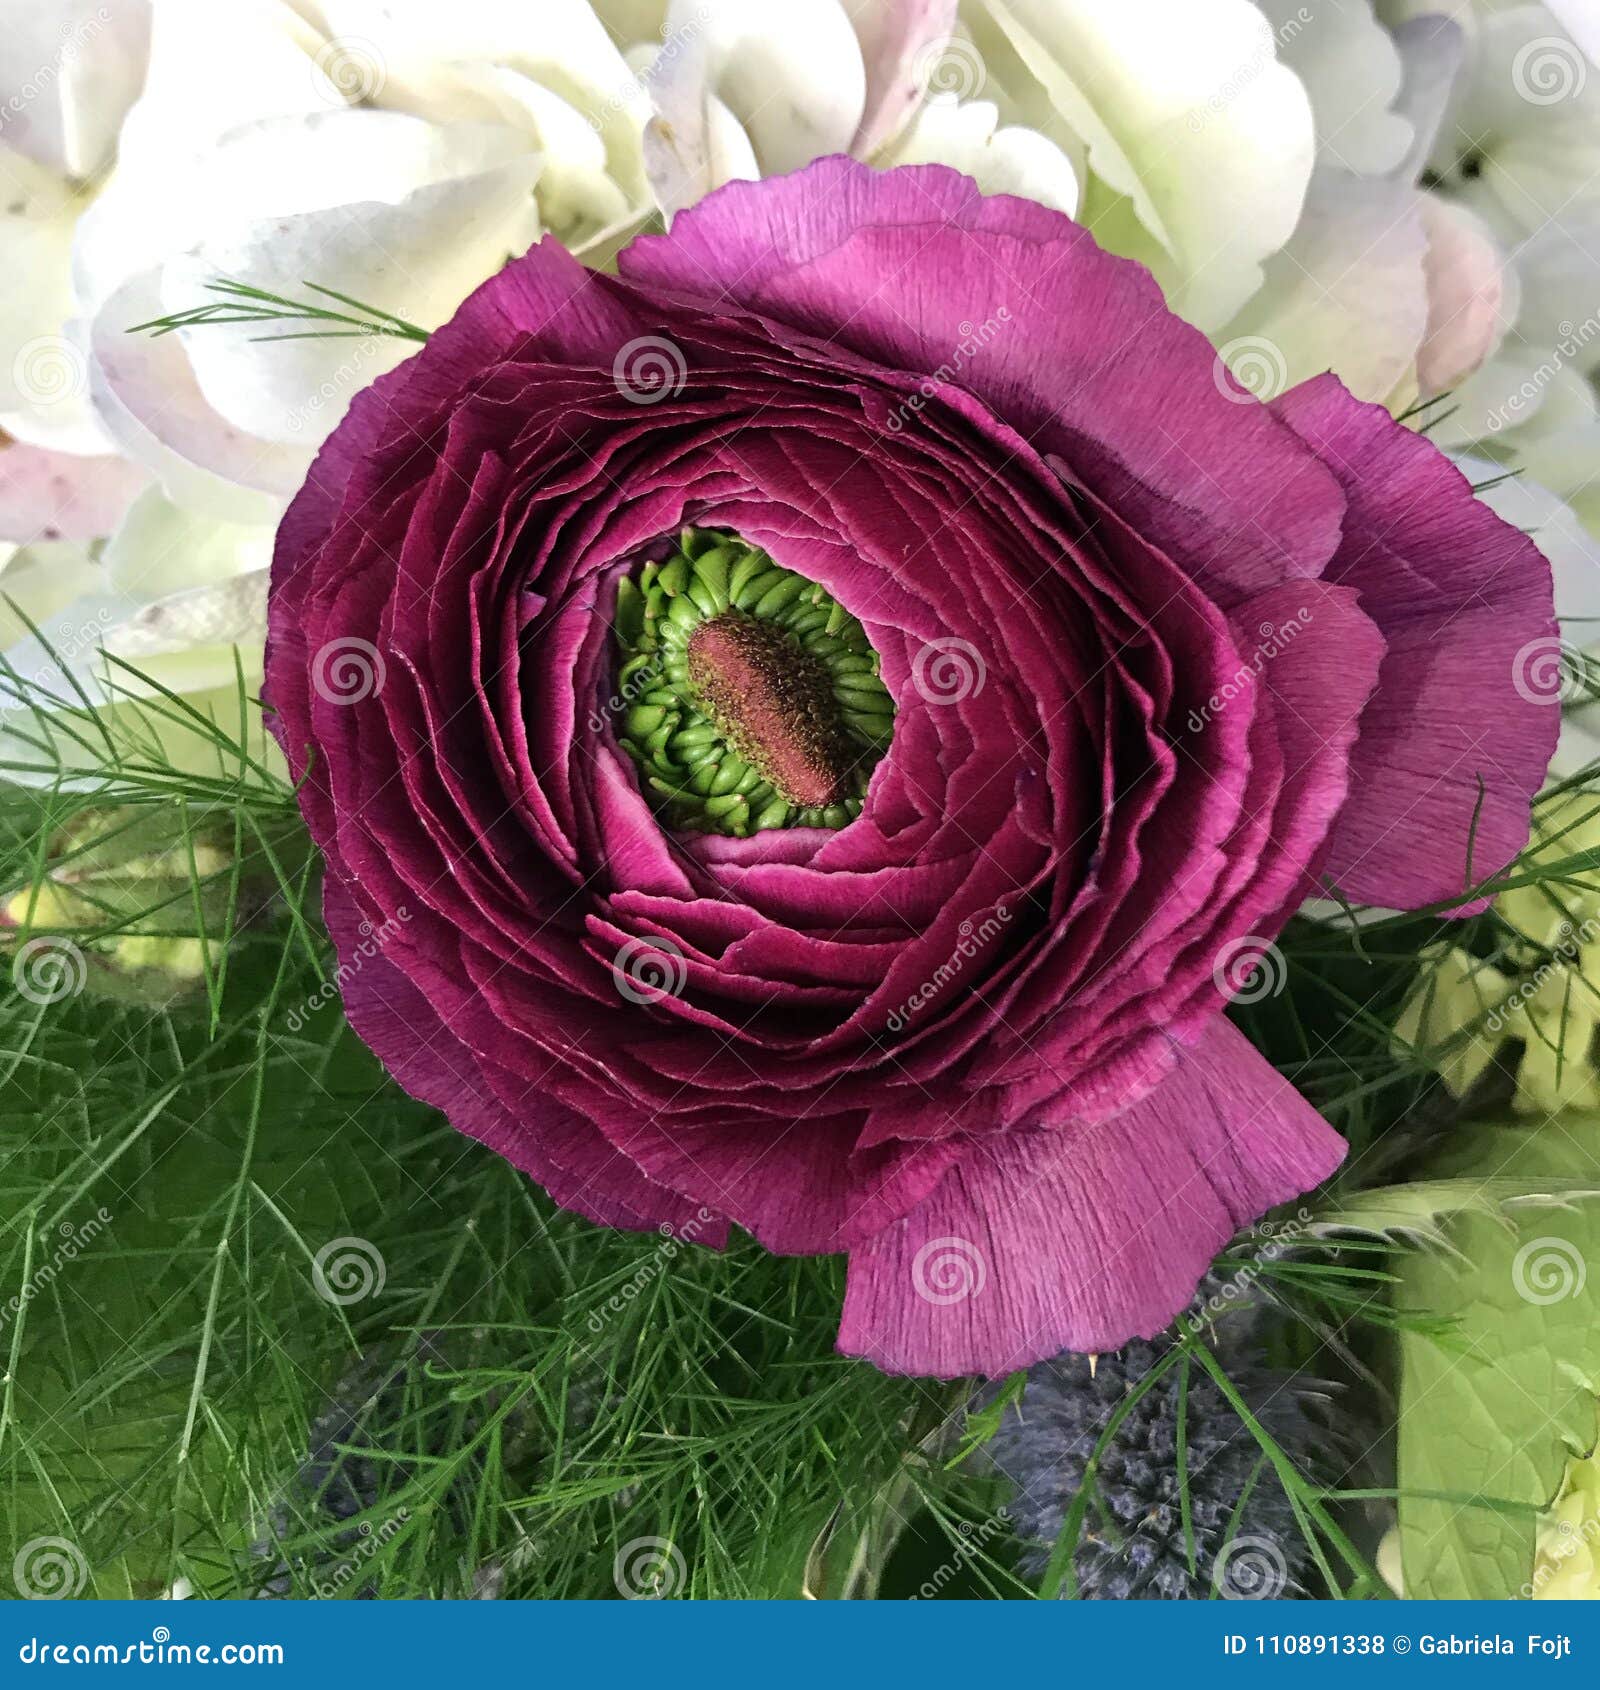 Ranunculus Flower Stock Photo Image Of Flower Green 110891338